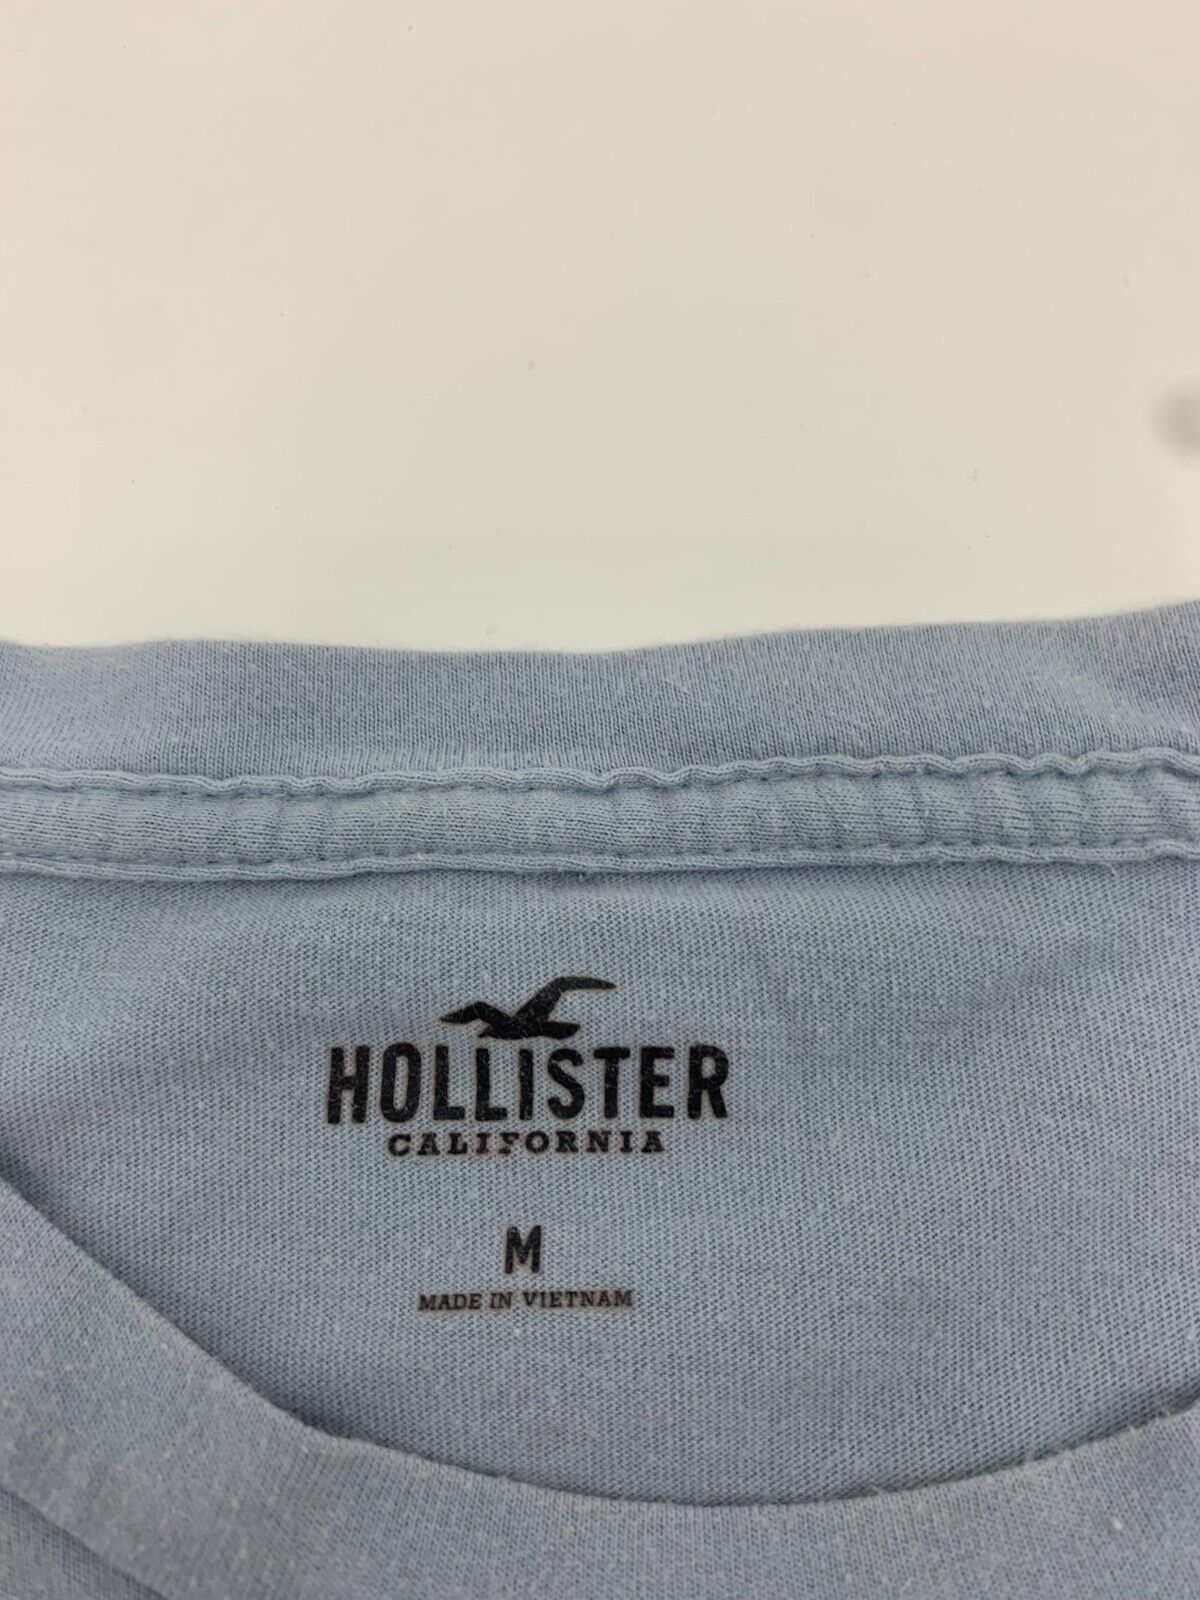 Hollister striped shirt in light blue